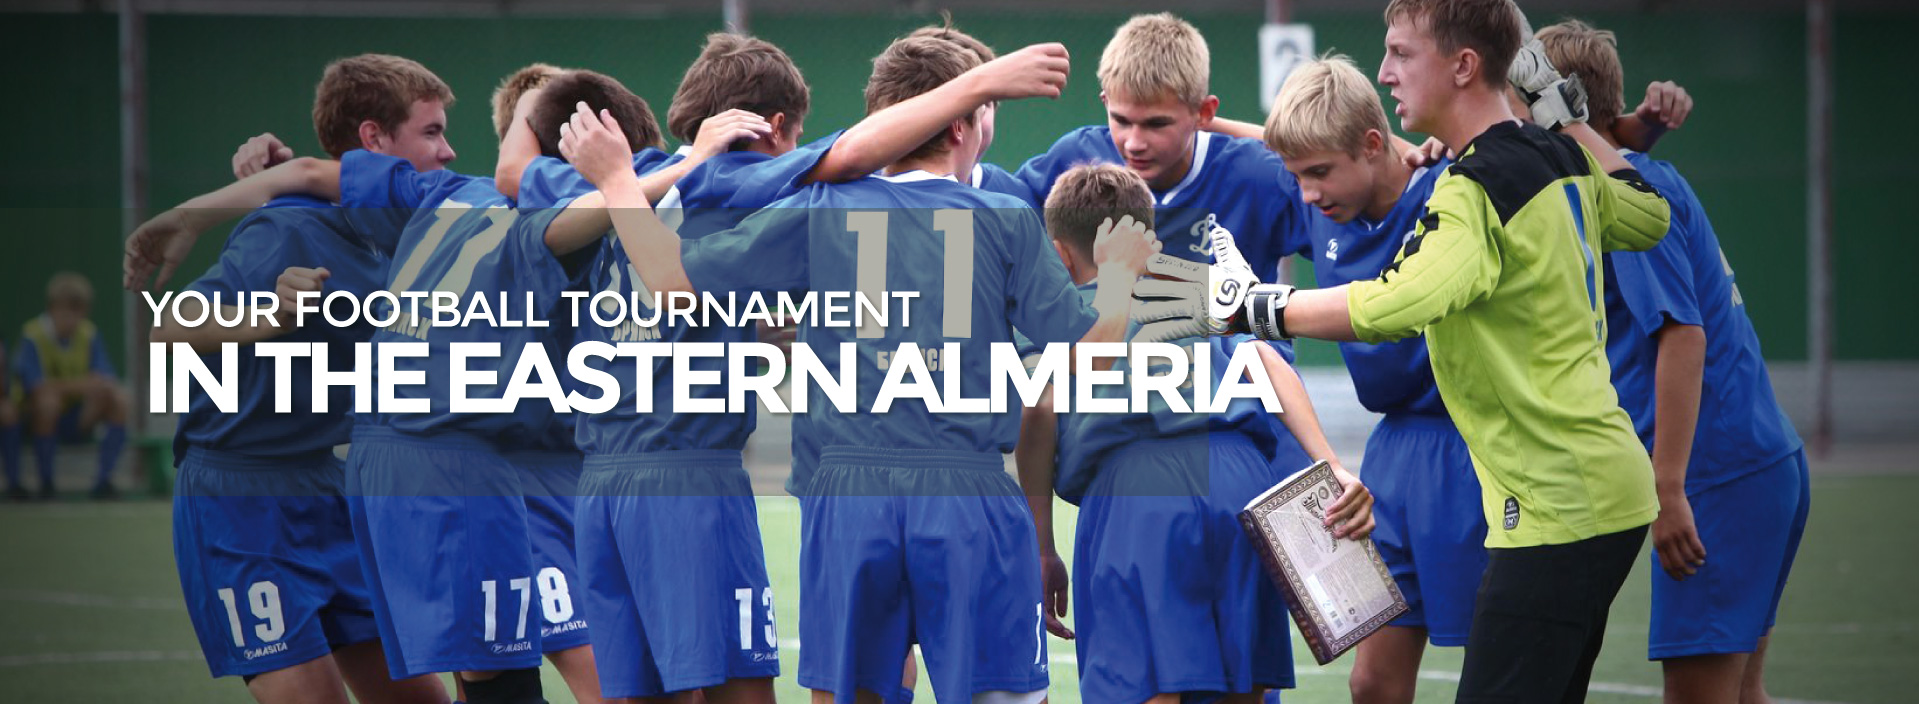 Levante Cup torneo en Almeria